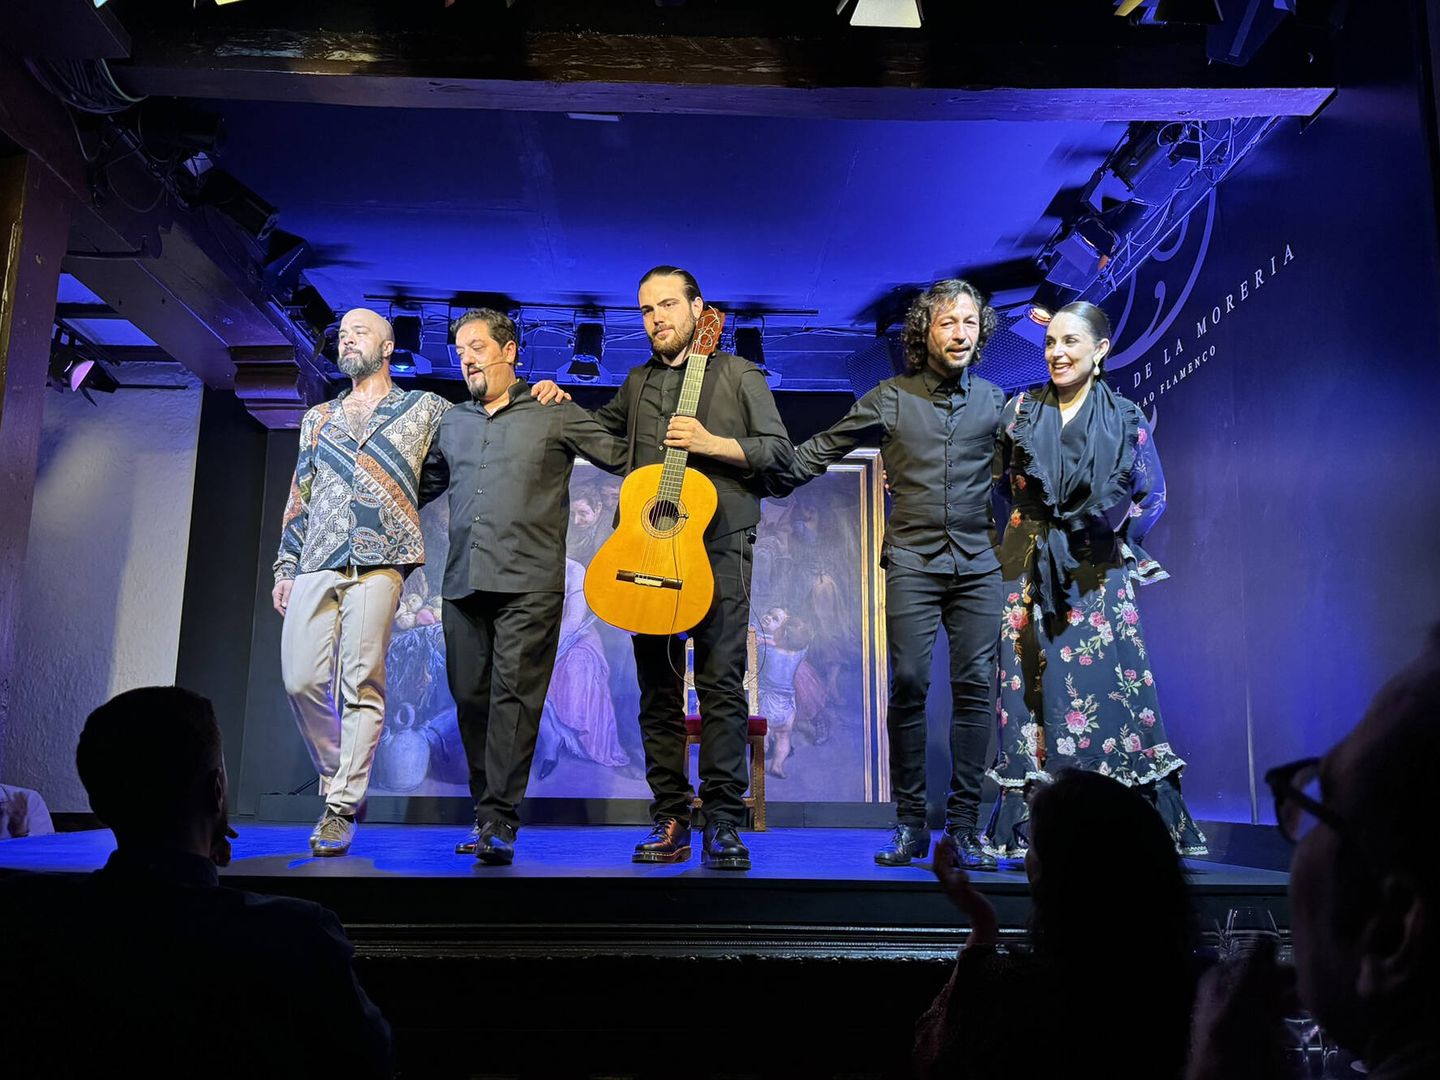 Espectáculo en el Corral de la Morería: Nino de los Reyes, Enrique Piculabe, Joni Jiménez, Miguel Lavy y Paula Comitre. (Rafael Ansón)